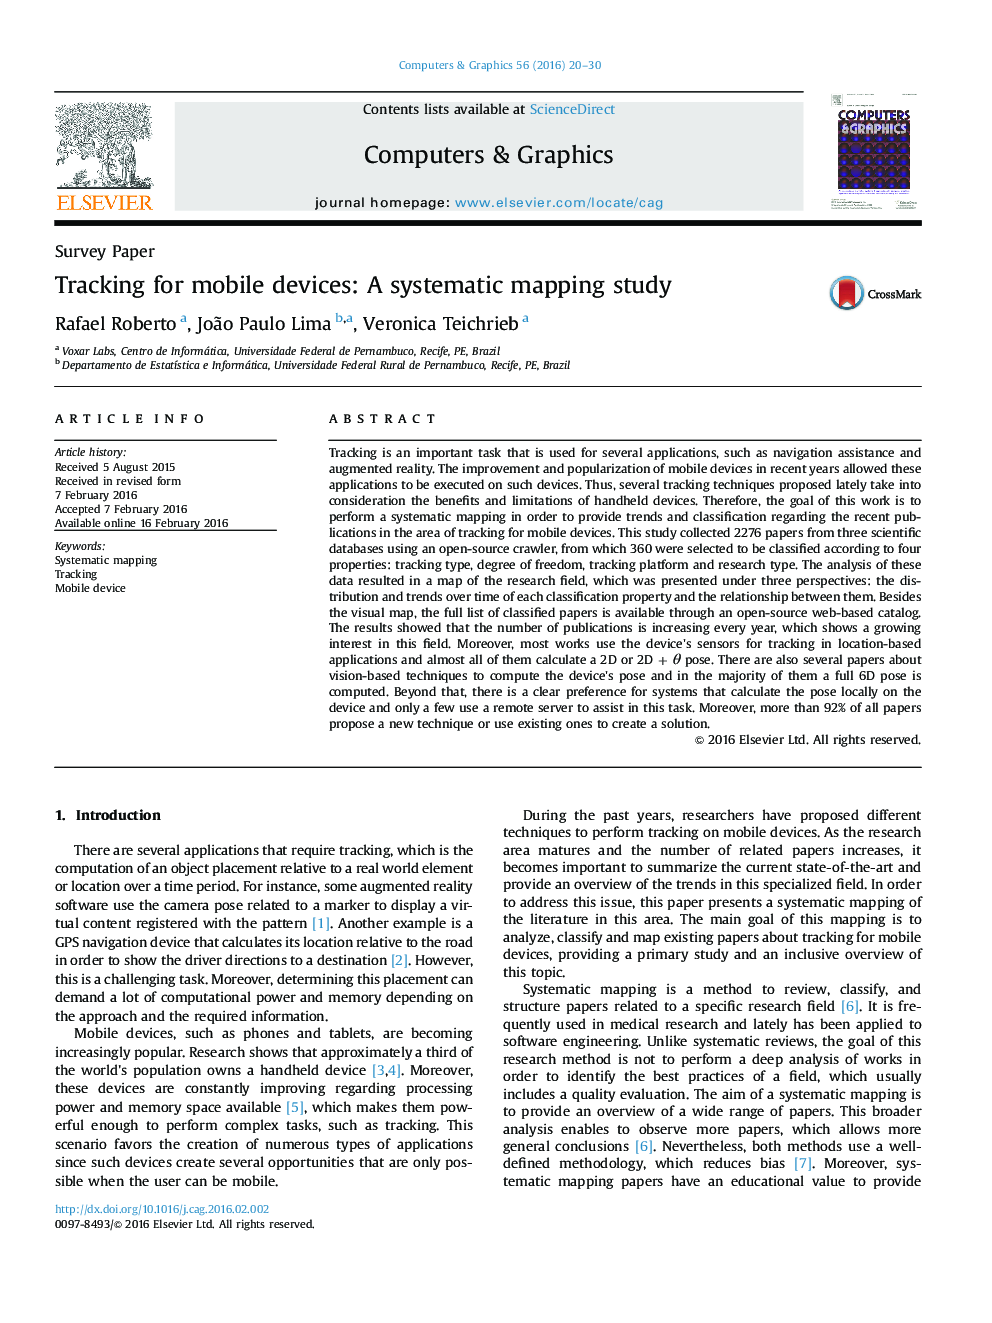 ردیابی برای دستگاه های تلفن همراه: مطالعه نقشه برداری سیستماتیک